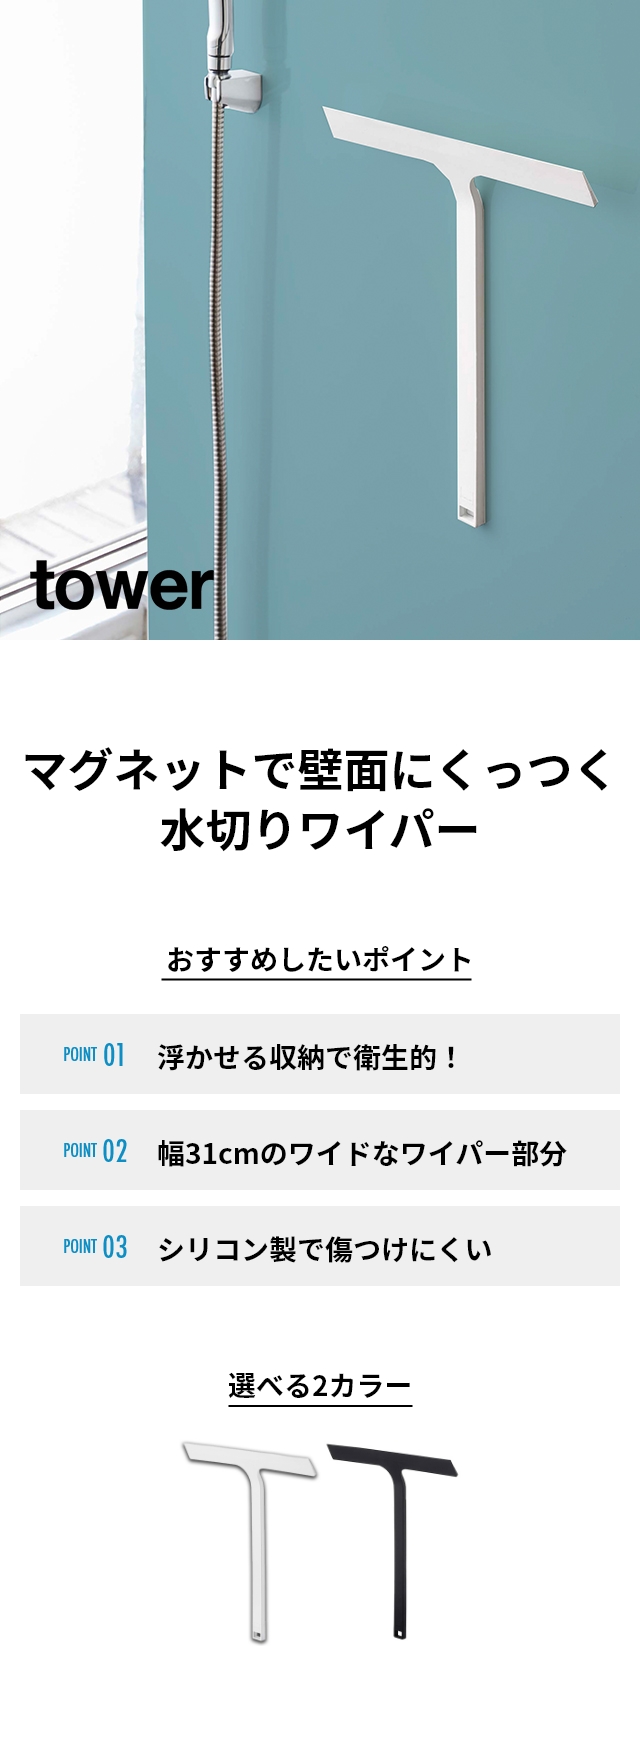 tower(タワー) マグネット水切りワイパー